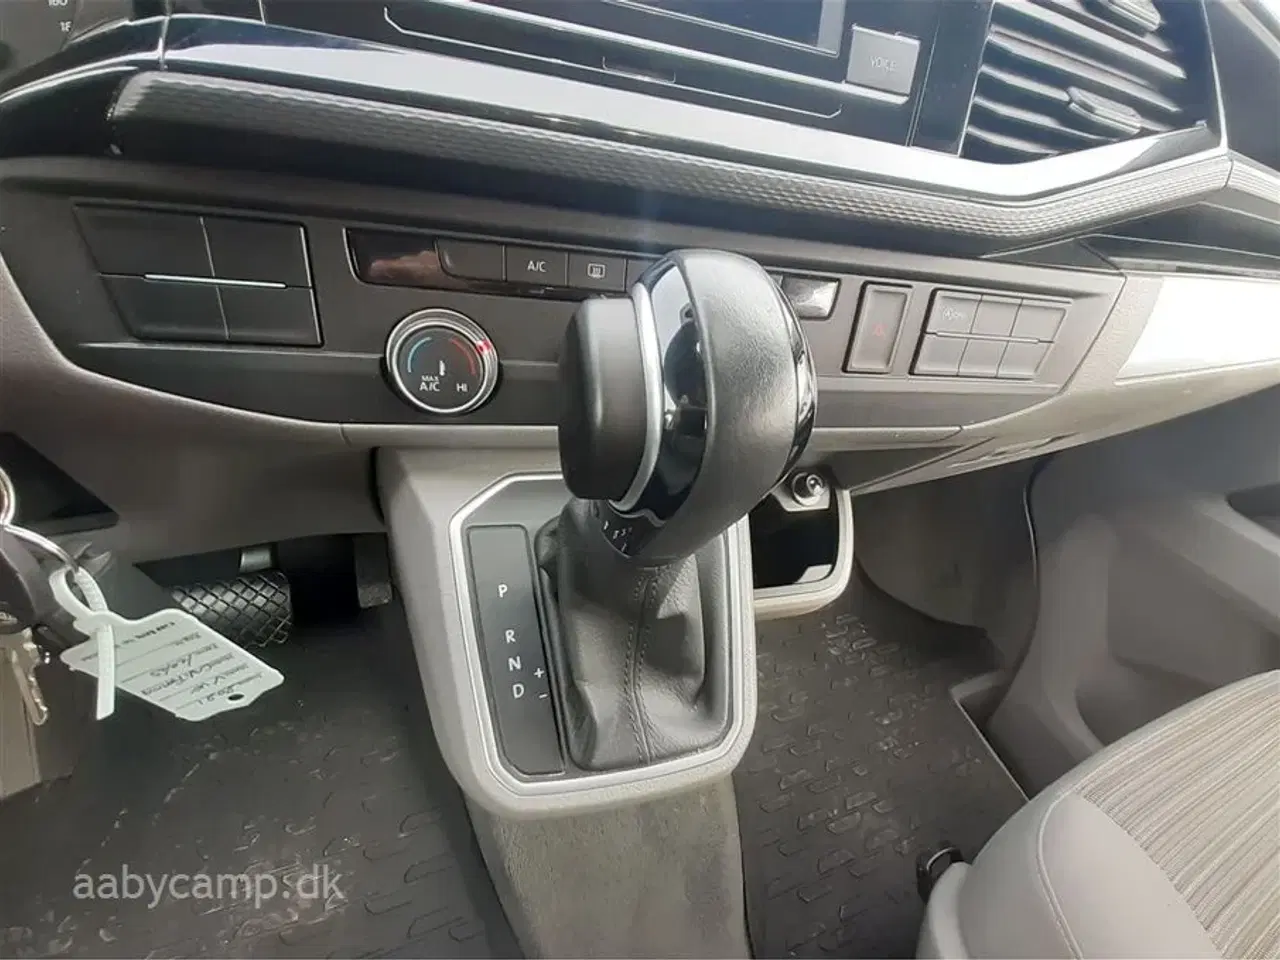 Billede 9 - 2021 - VW California Coast Aut.   Lille kompakt camper. DSG. Adaptiv fartpilot. sommer/vinterhjul. undervognsbehandlet fra ny.